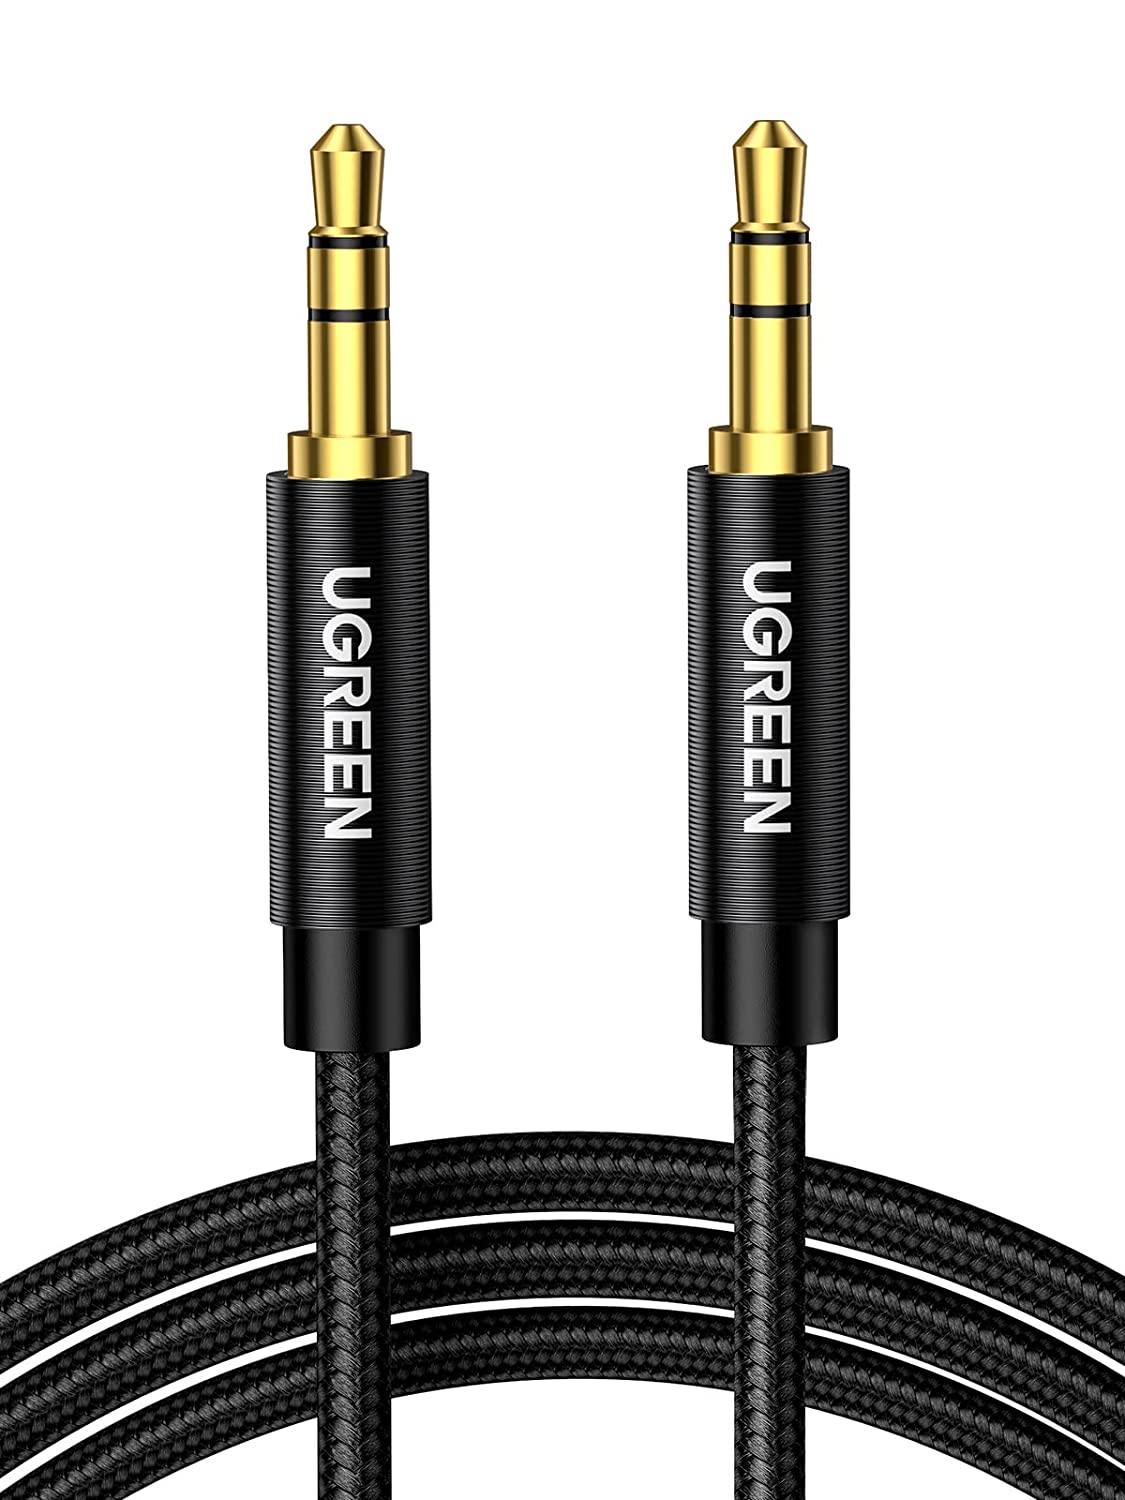 50363 Аудио кабель 3,5мм - 3,5мм UGREEN AV112, цвет: черный, длина: 2m от prem.by 